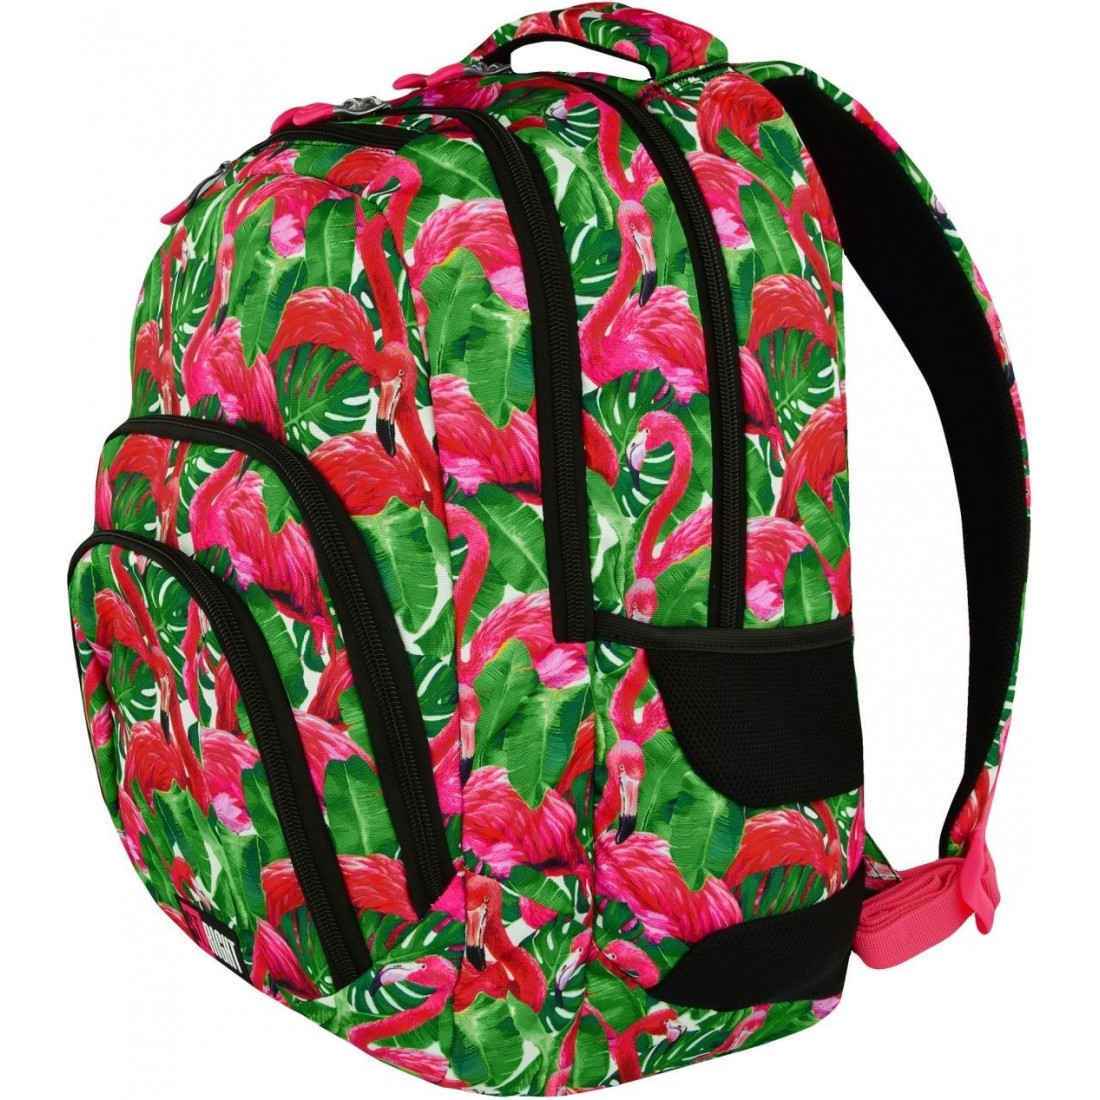 Plecak szkolny ST.RIGHT FLAMINGO PINK & GREEN różowe flamingi - plecak-tornister.pl